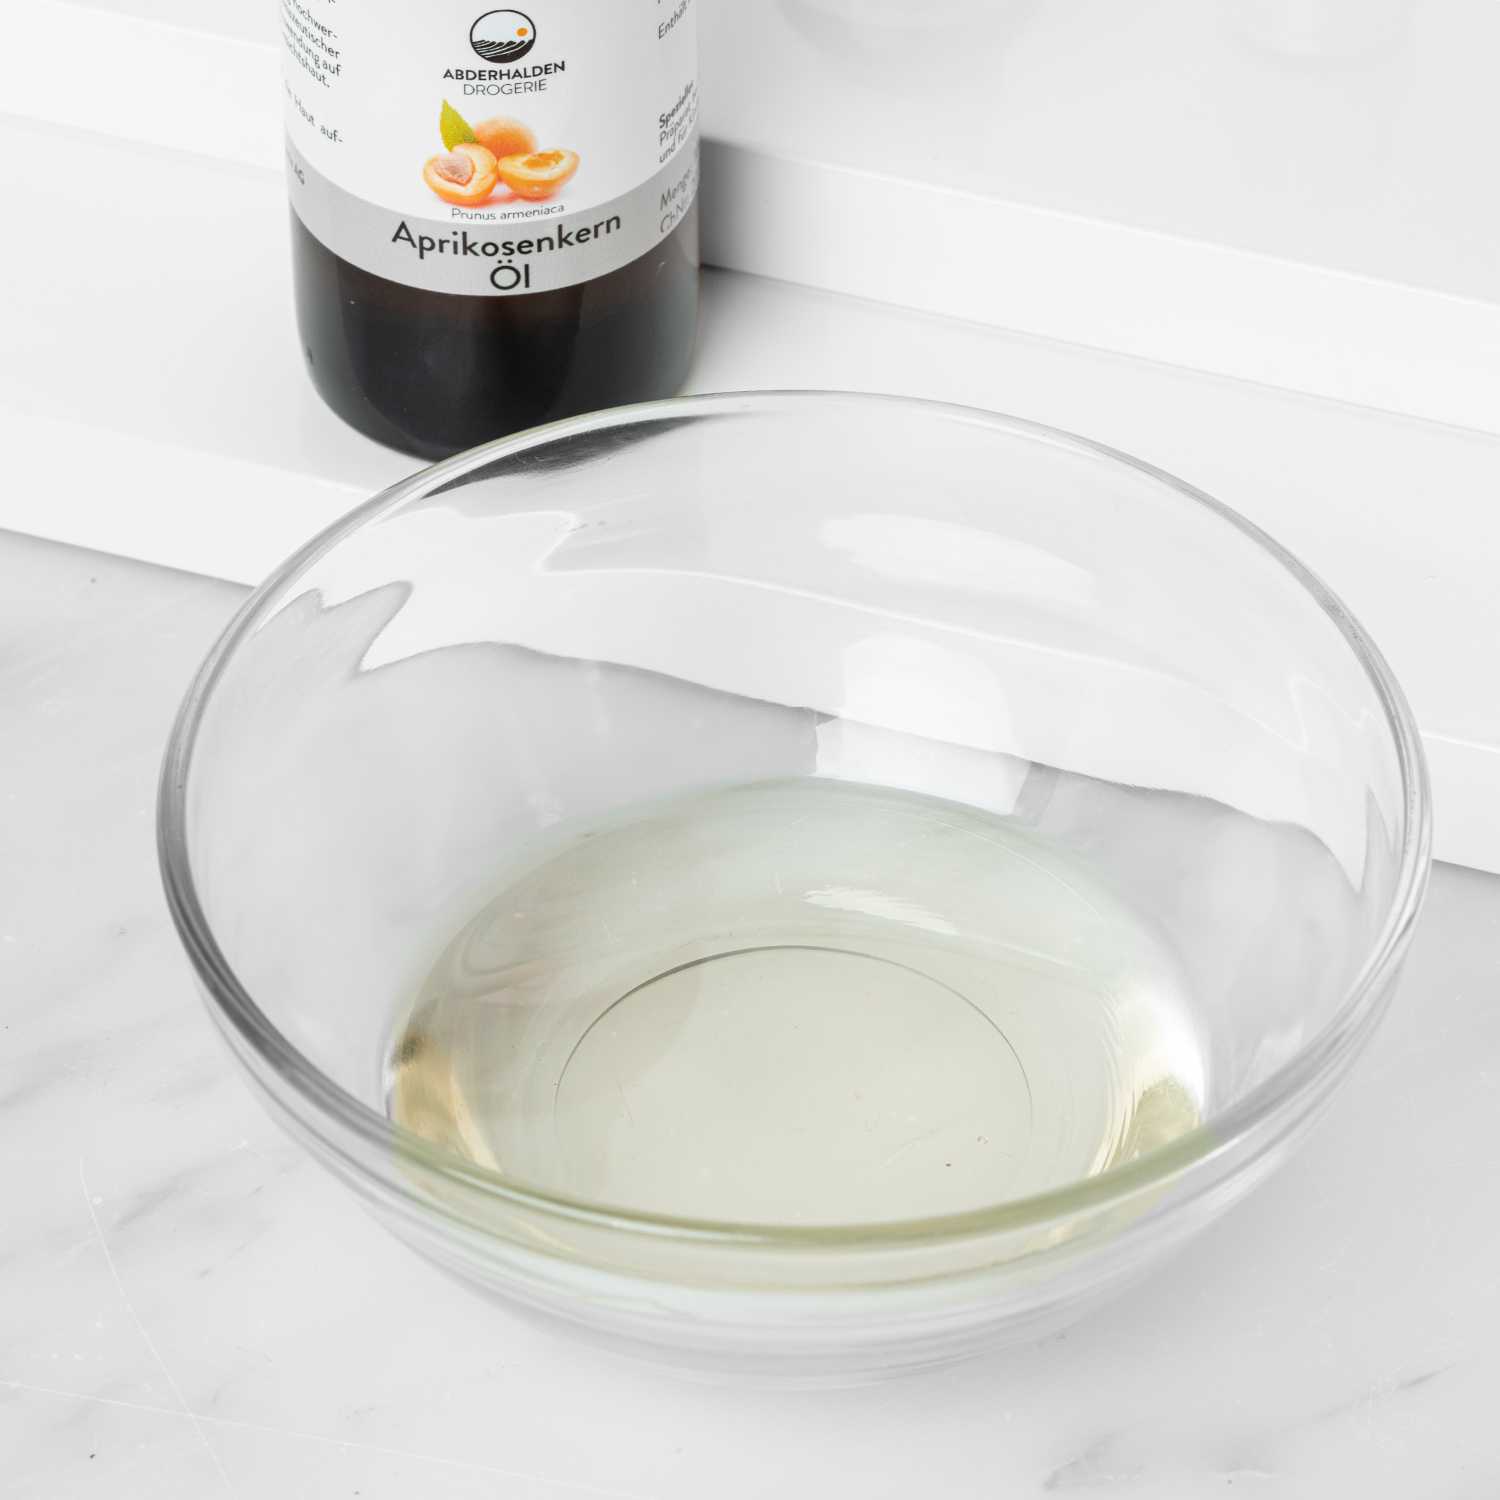 Aprikosenkernöl abgewogen in kleiner Schale mit Flasche im Hintergrund